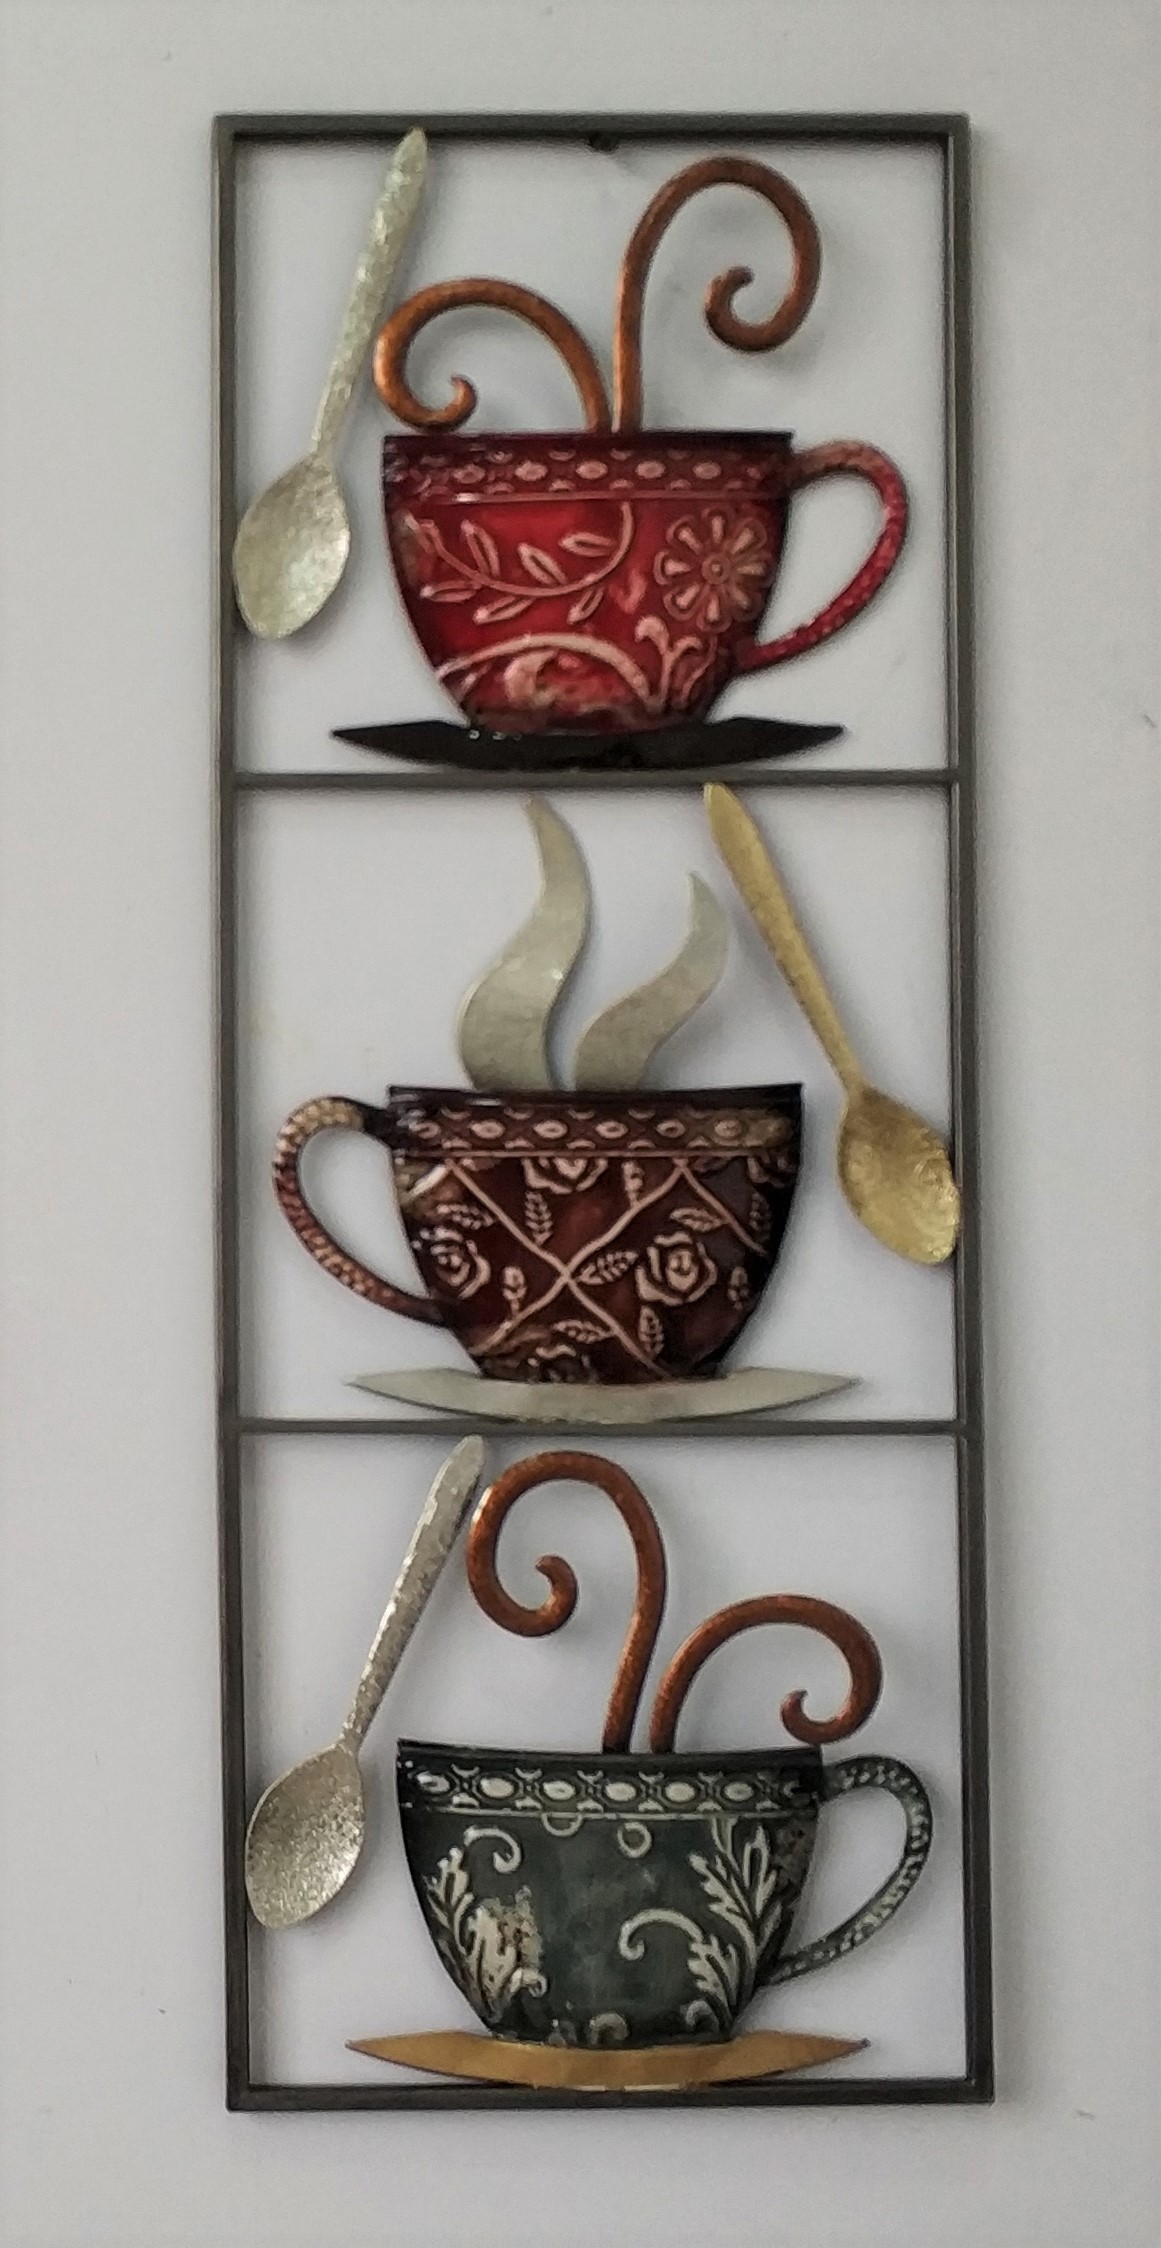 Metalen wanddecoratie "More Coffee than Tea" te koop @ Betaalbarekunst.nl. Goedkoop speels stukje kunst van metaal voor aan de muur.